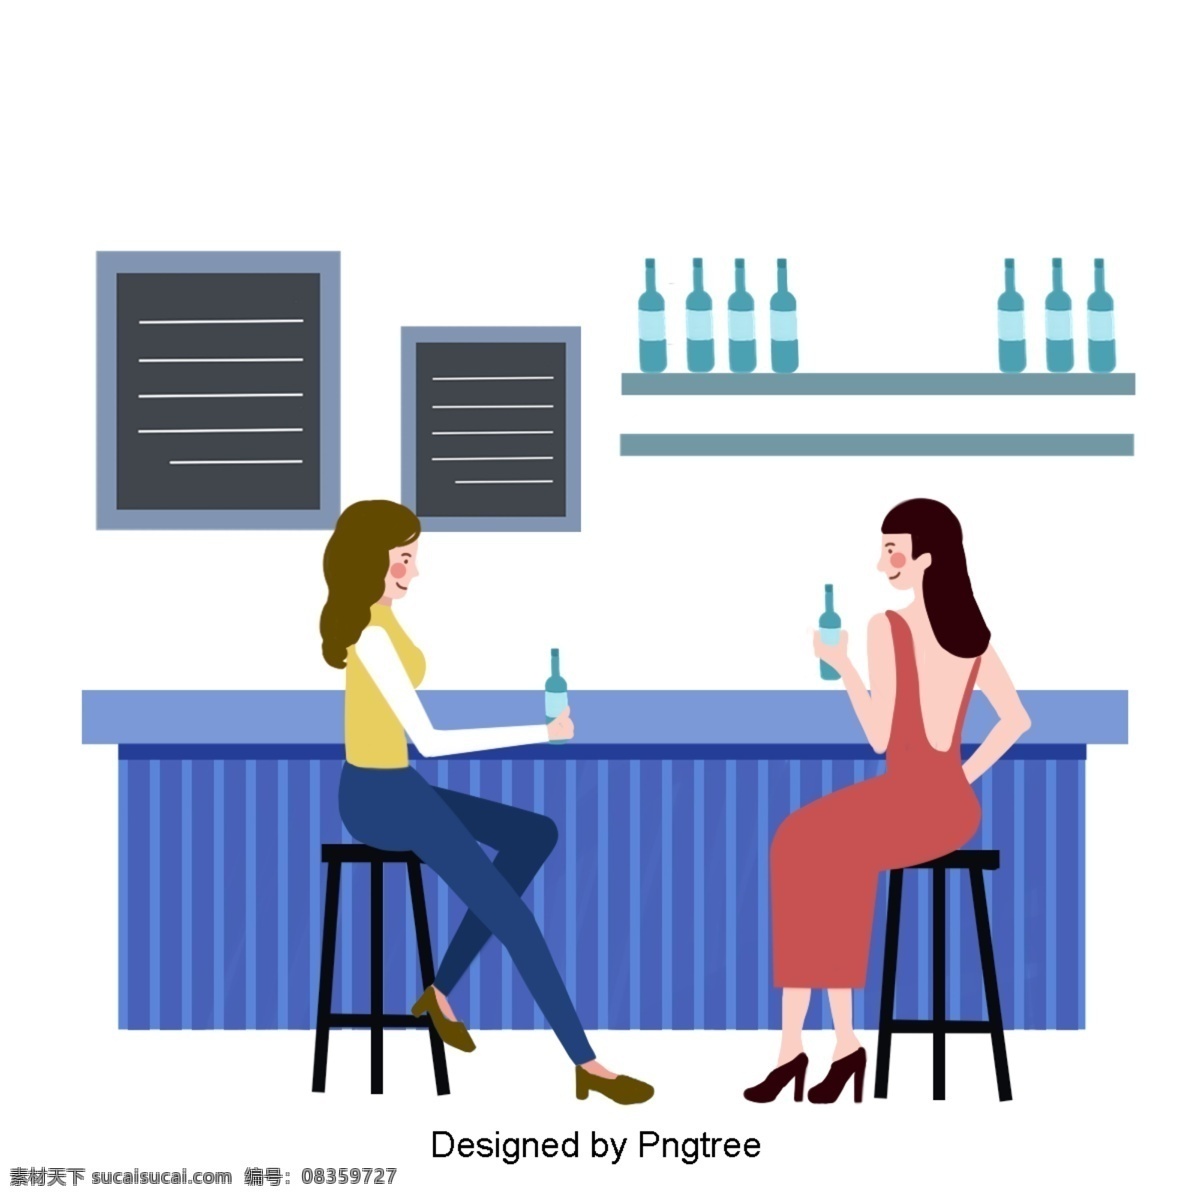 插图 两 人 喝酒 聊天 品 醇 客 杂志 介绍 快乐 桌子 窗户 刮